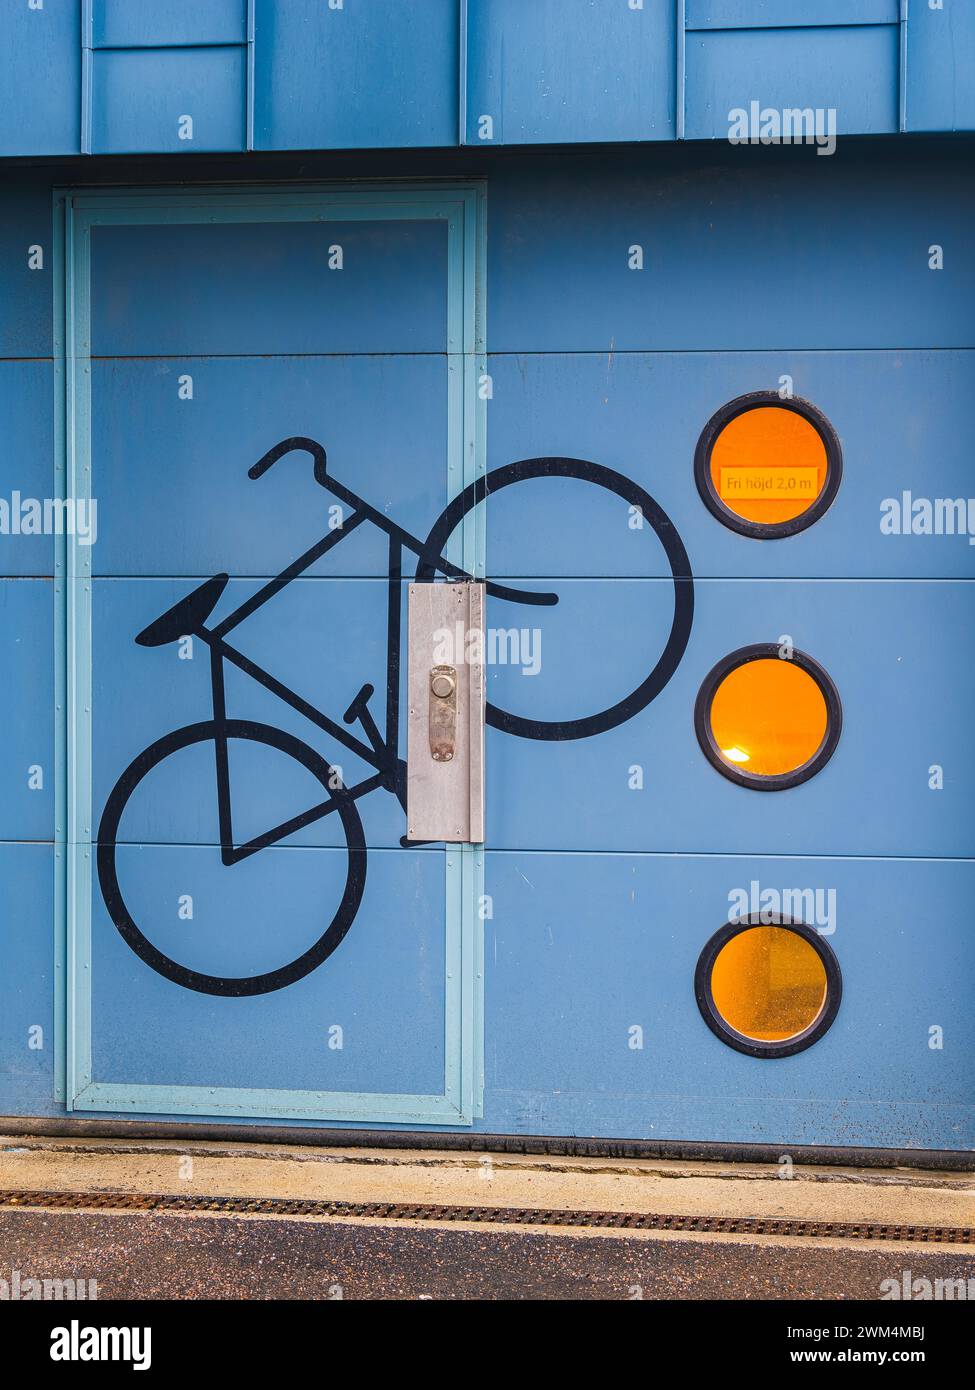 Una vivace parete blu di deposito a Gothenburg, Svezia, presenta una silhouette dipinta di una bicicletta e tre cartelli circolari arancioni. Il disegno sugg Foto Stock